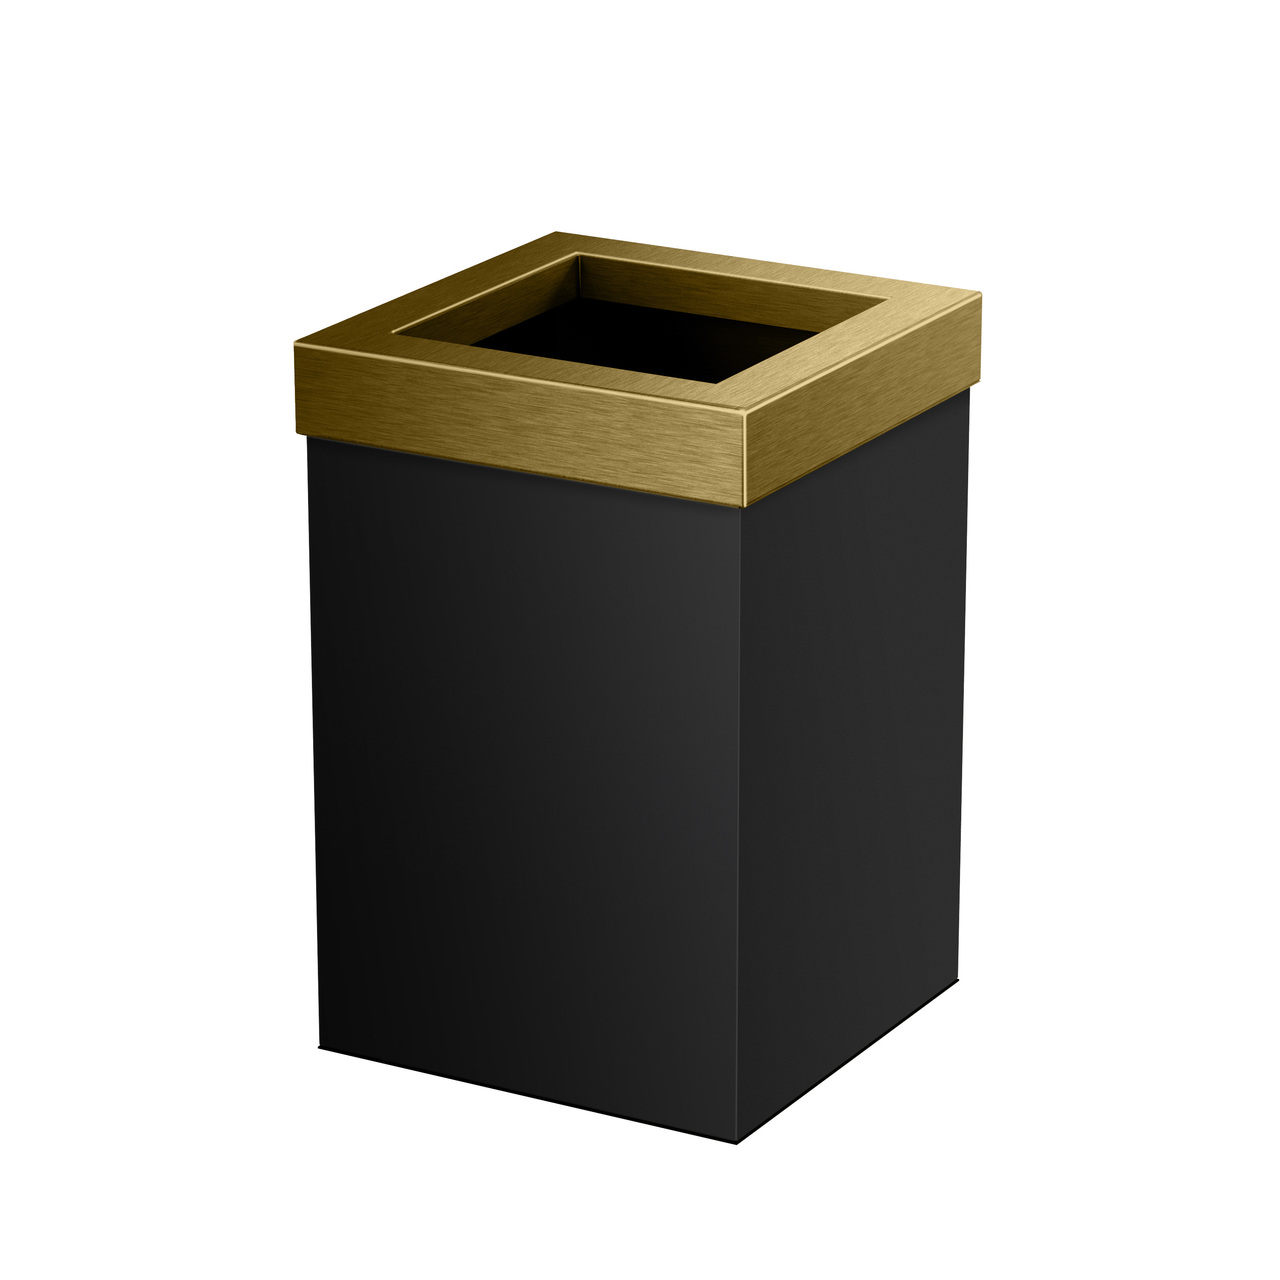 Square Modern Waste Basket in Matte Black/Brushed Brass